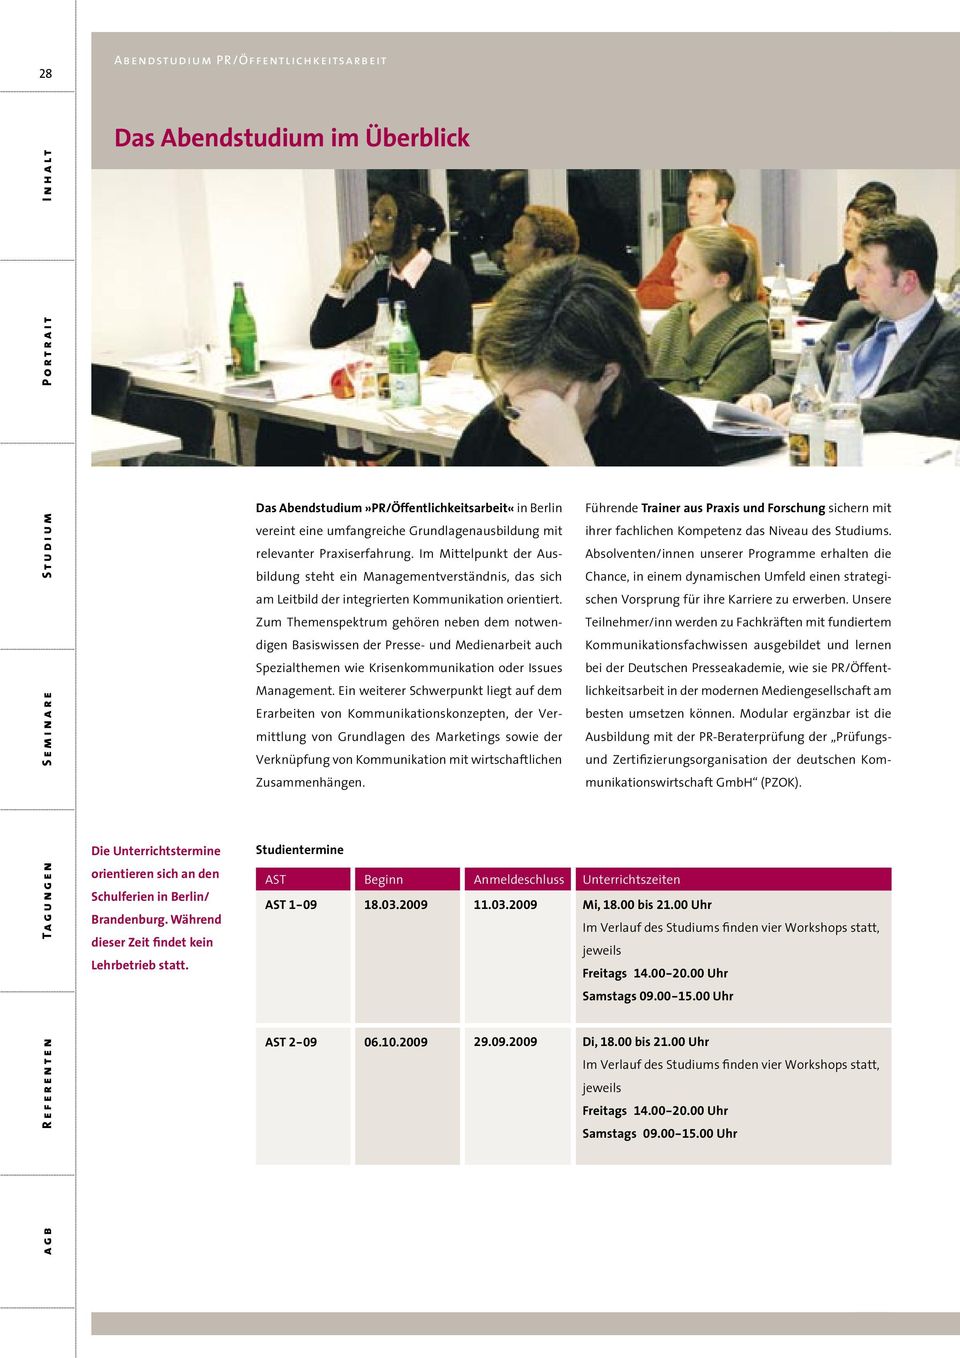 Das Abendstudium»PR/Öffentlichkeitsarbeit«in Berlin vereint eine umfangreiche Grundlagenausbildung mit relevanter Praxiserfahrung.